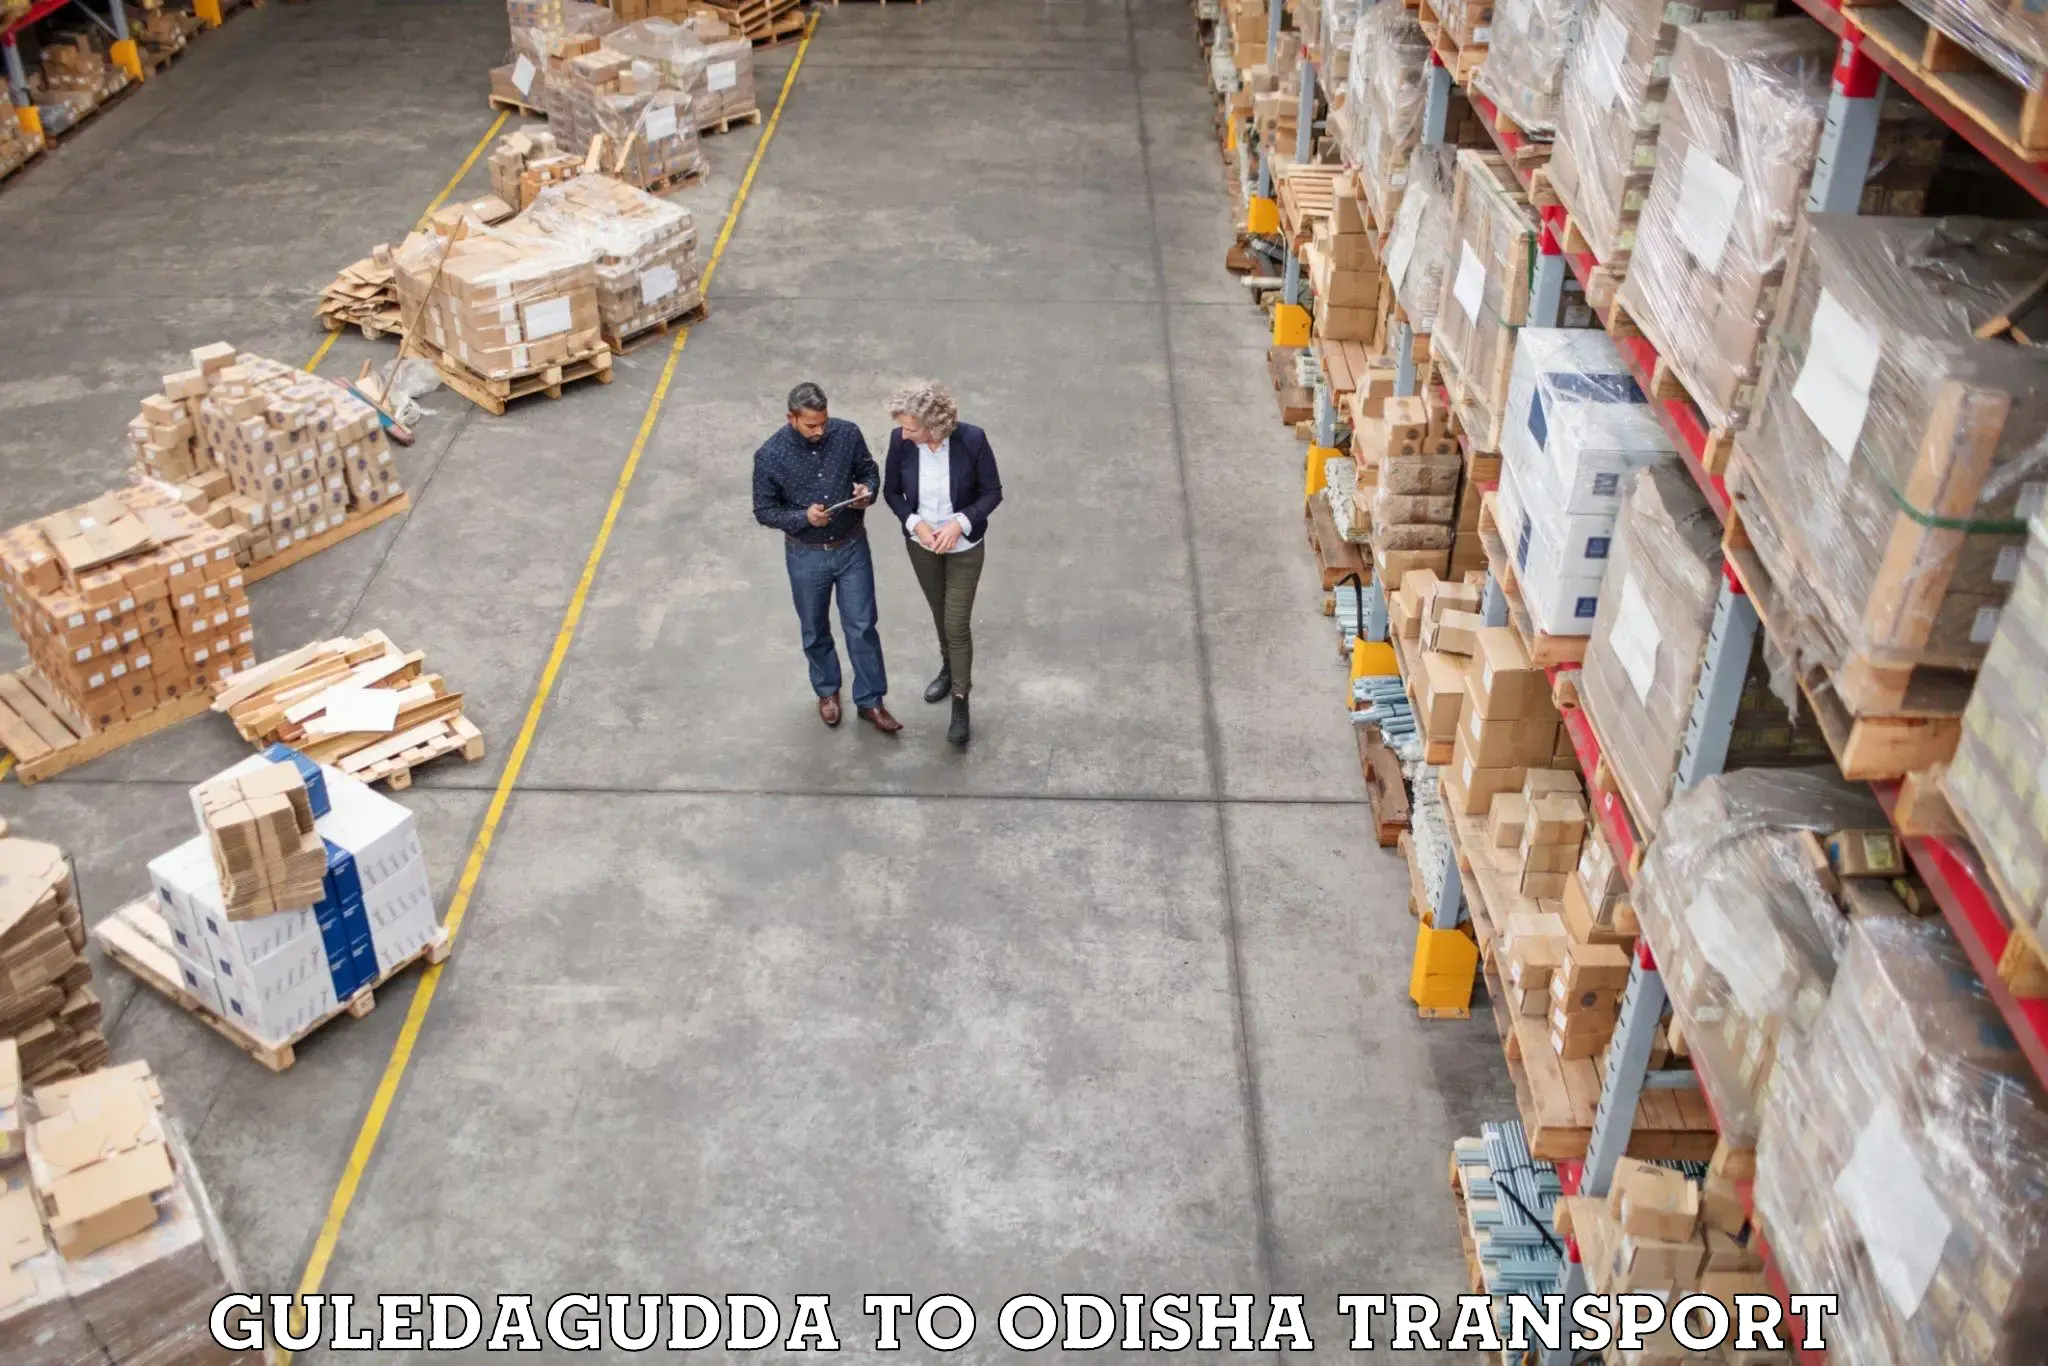 Interstate transport services Guledagudda to Puri